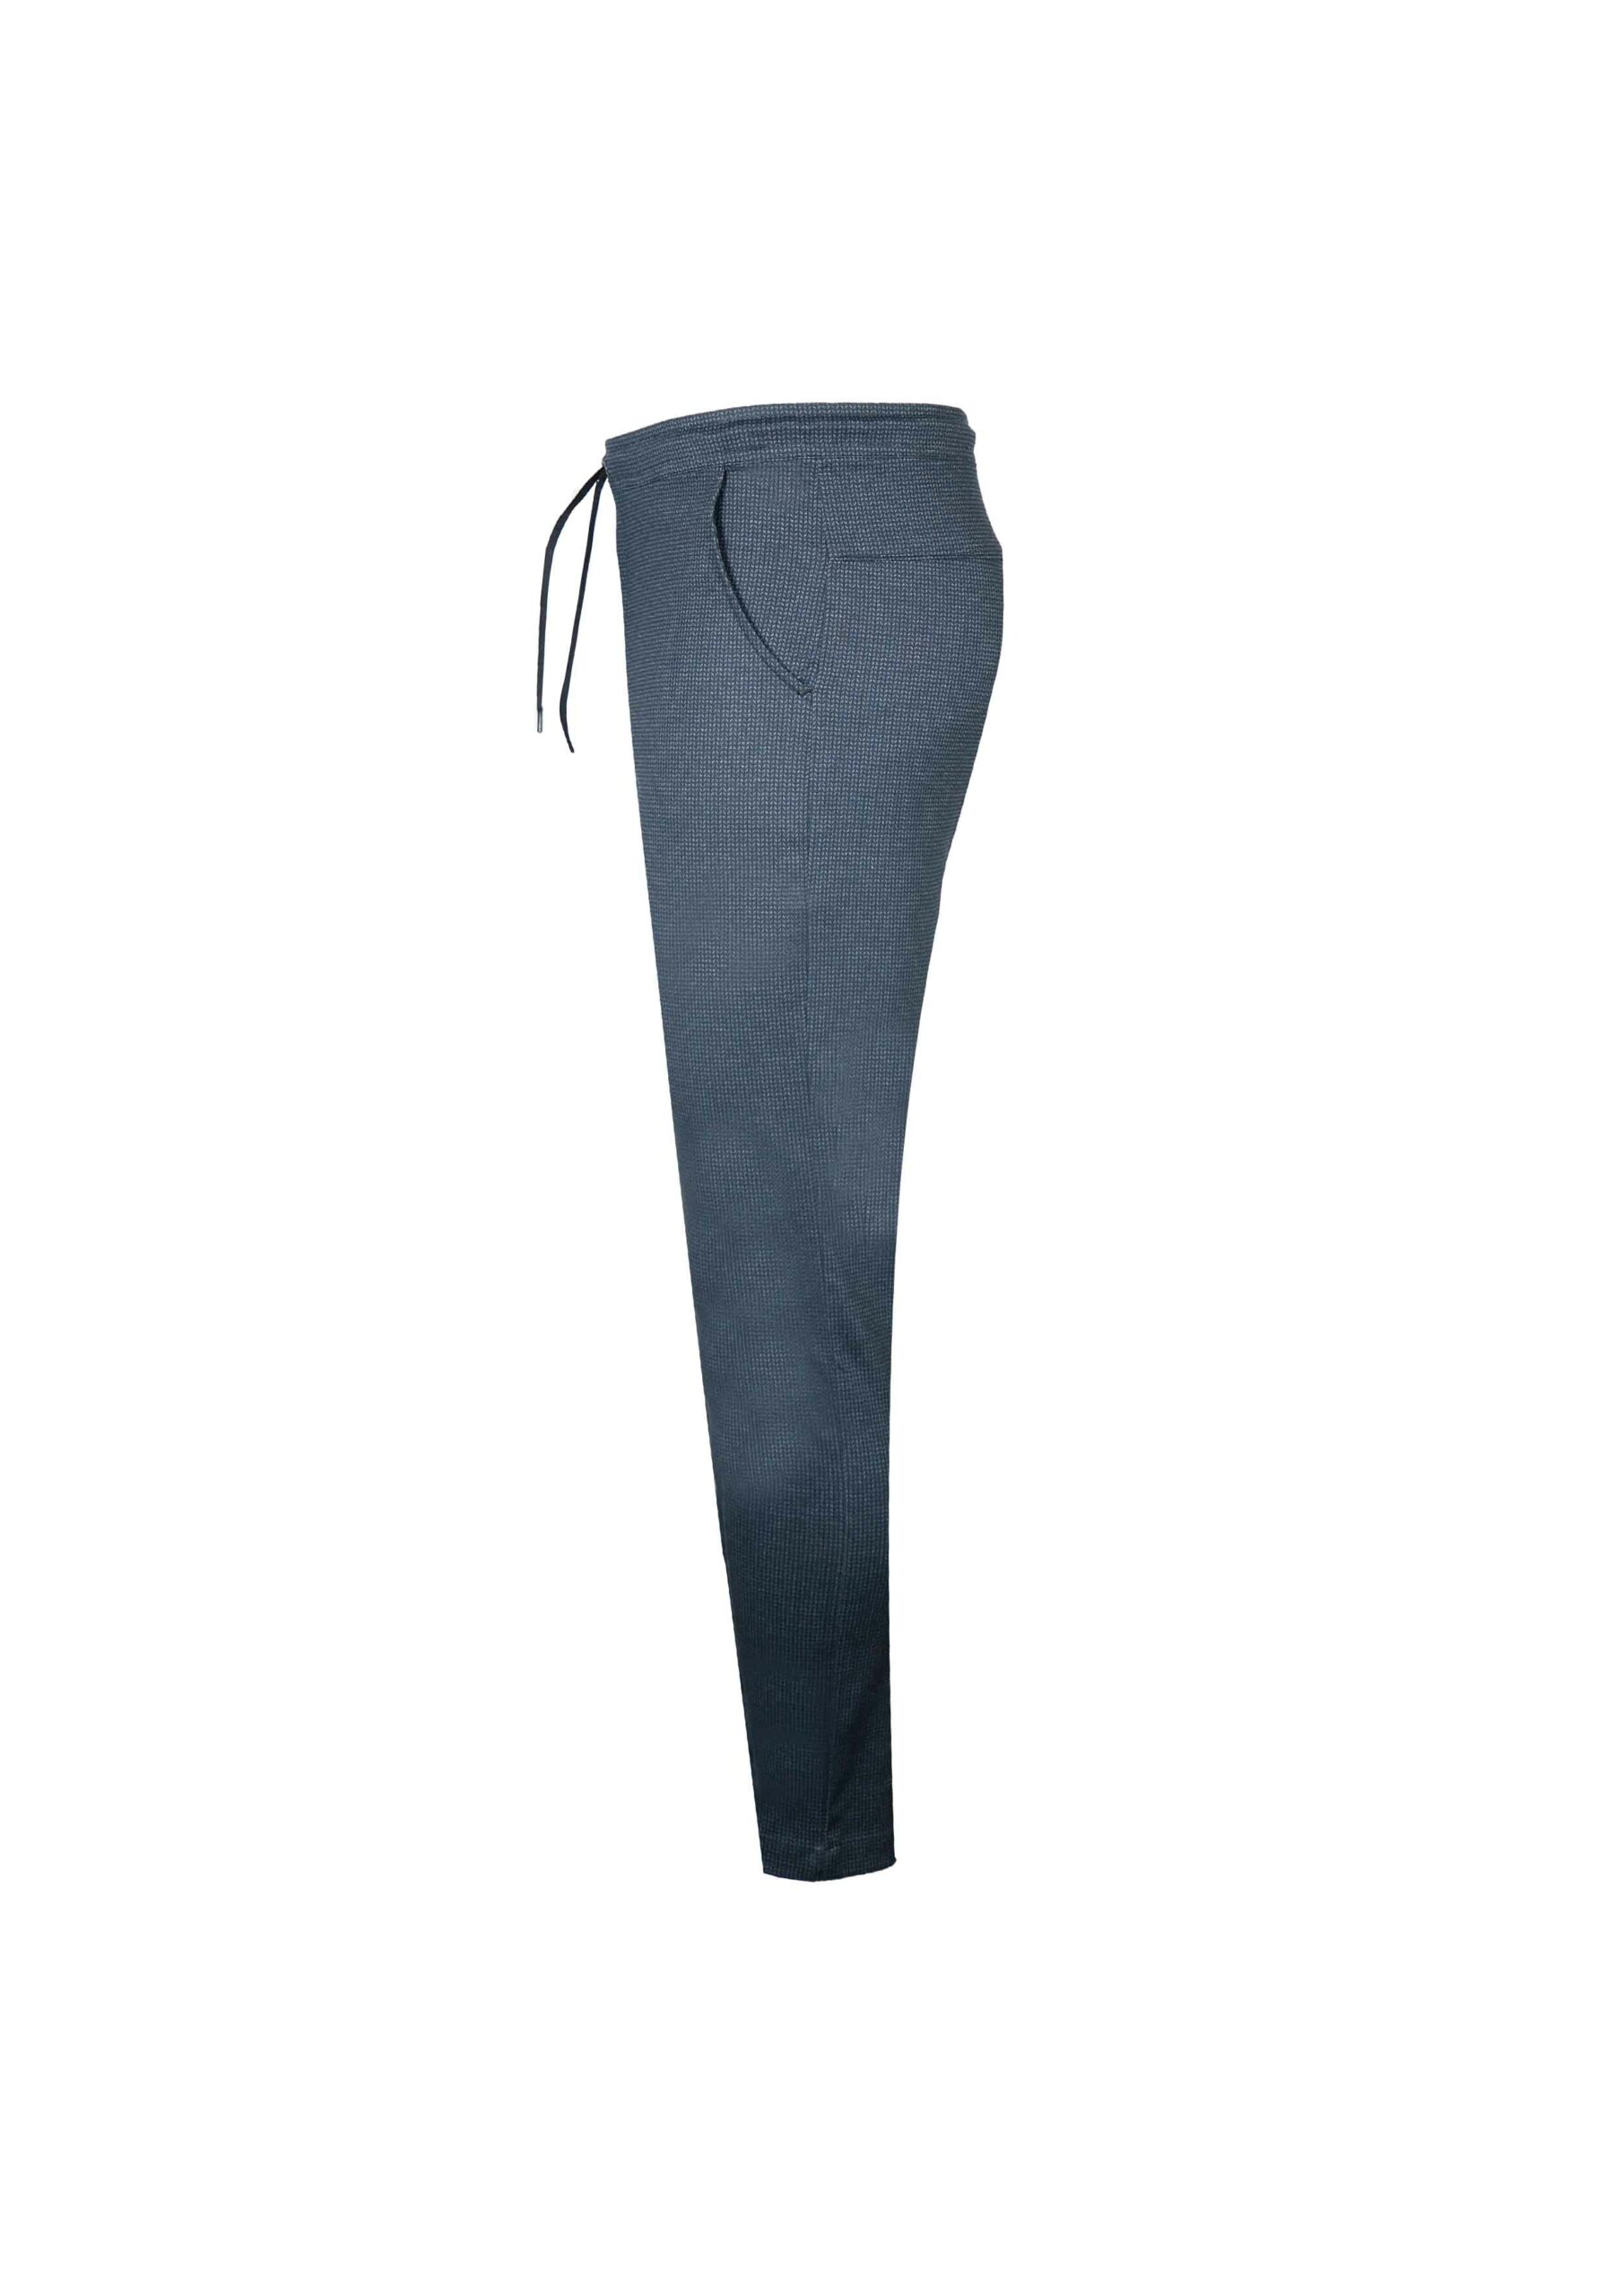 Men’s Trouser - Artisan Outfitters Ltd